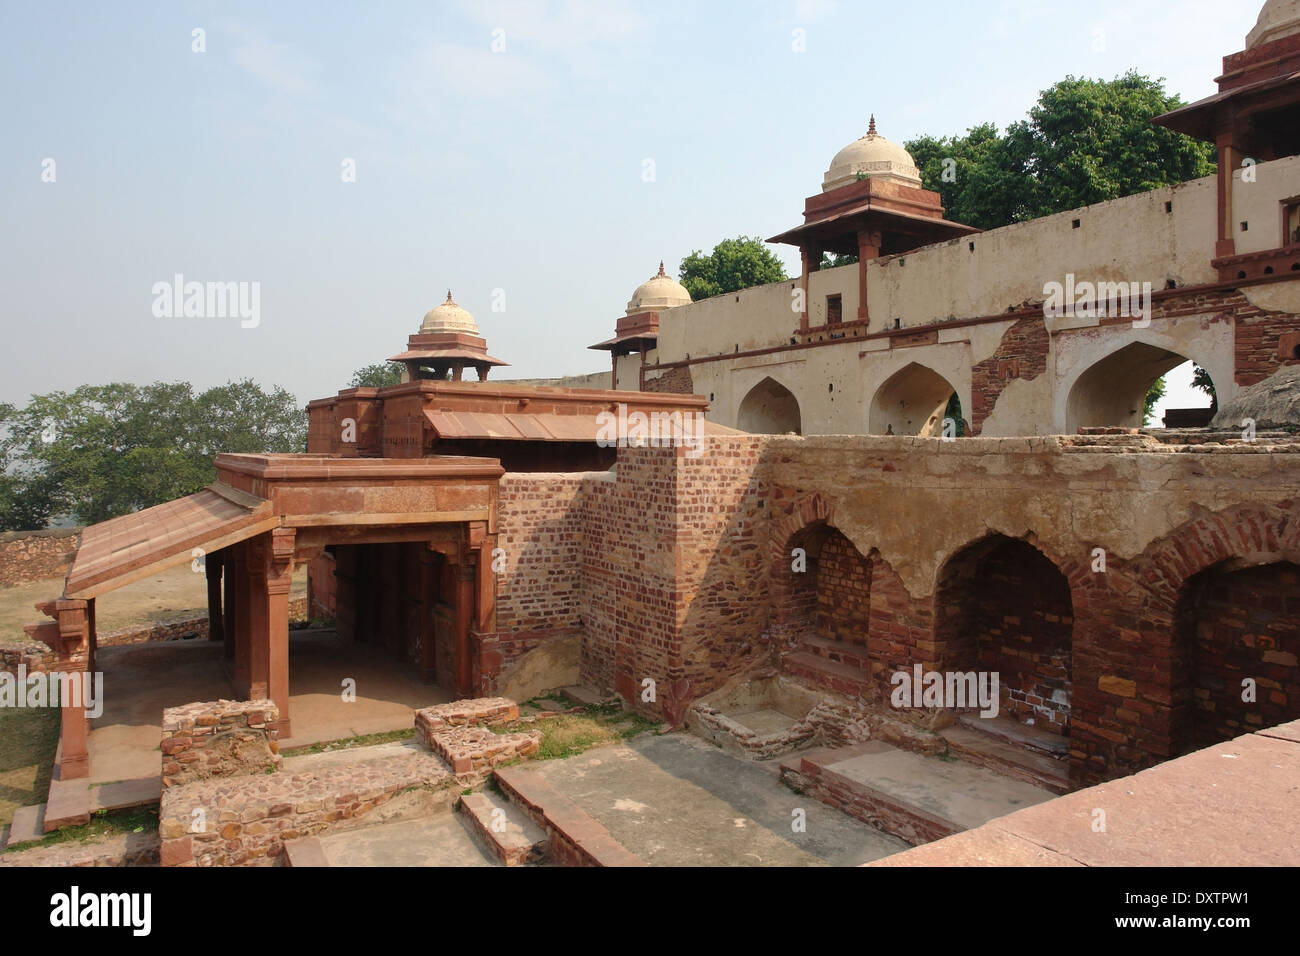 Détail architectural autour de Fatehpur Sikri, une ville de l'Uttar Pradesh, Inde Banque D'Images